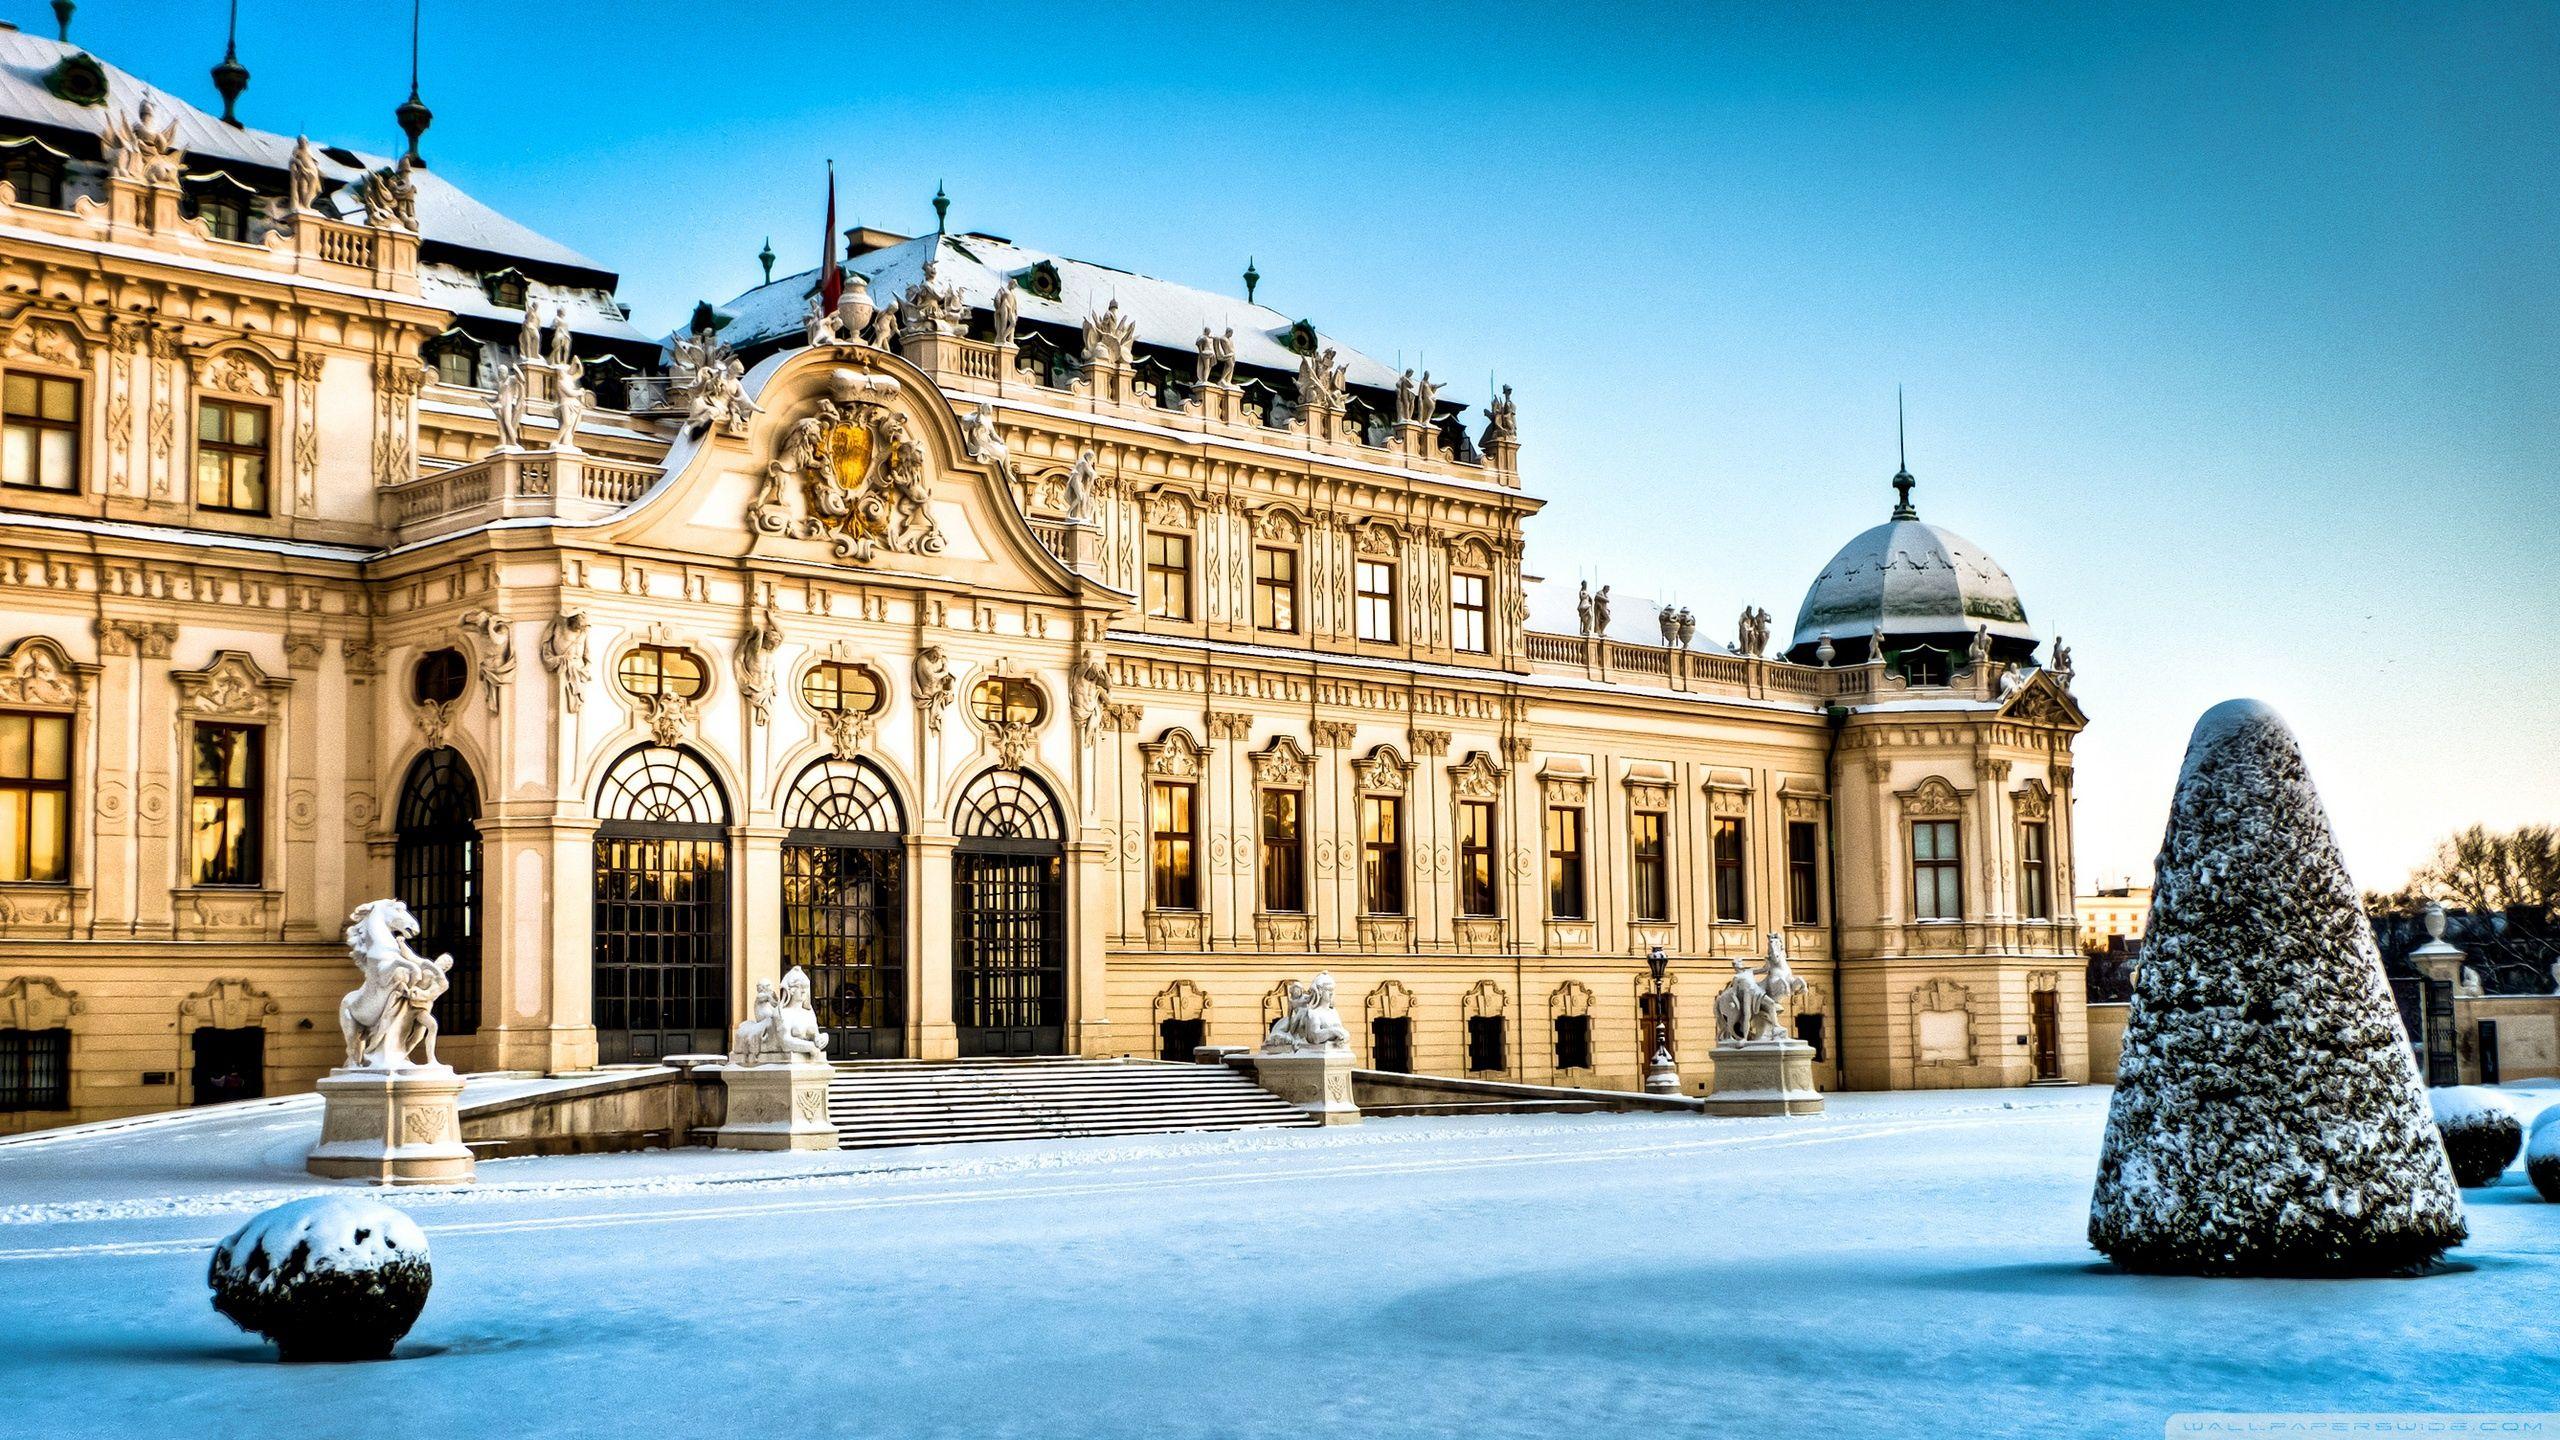 2560x1440 Cung điện Belvedere, Vienna, Áo, Mùa đông ❤ Hình nền máy tính để bàn HD 4K